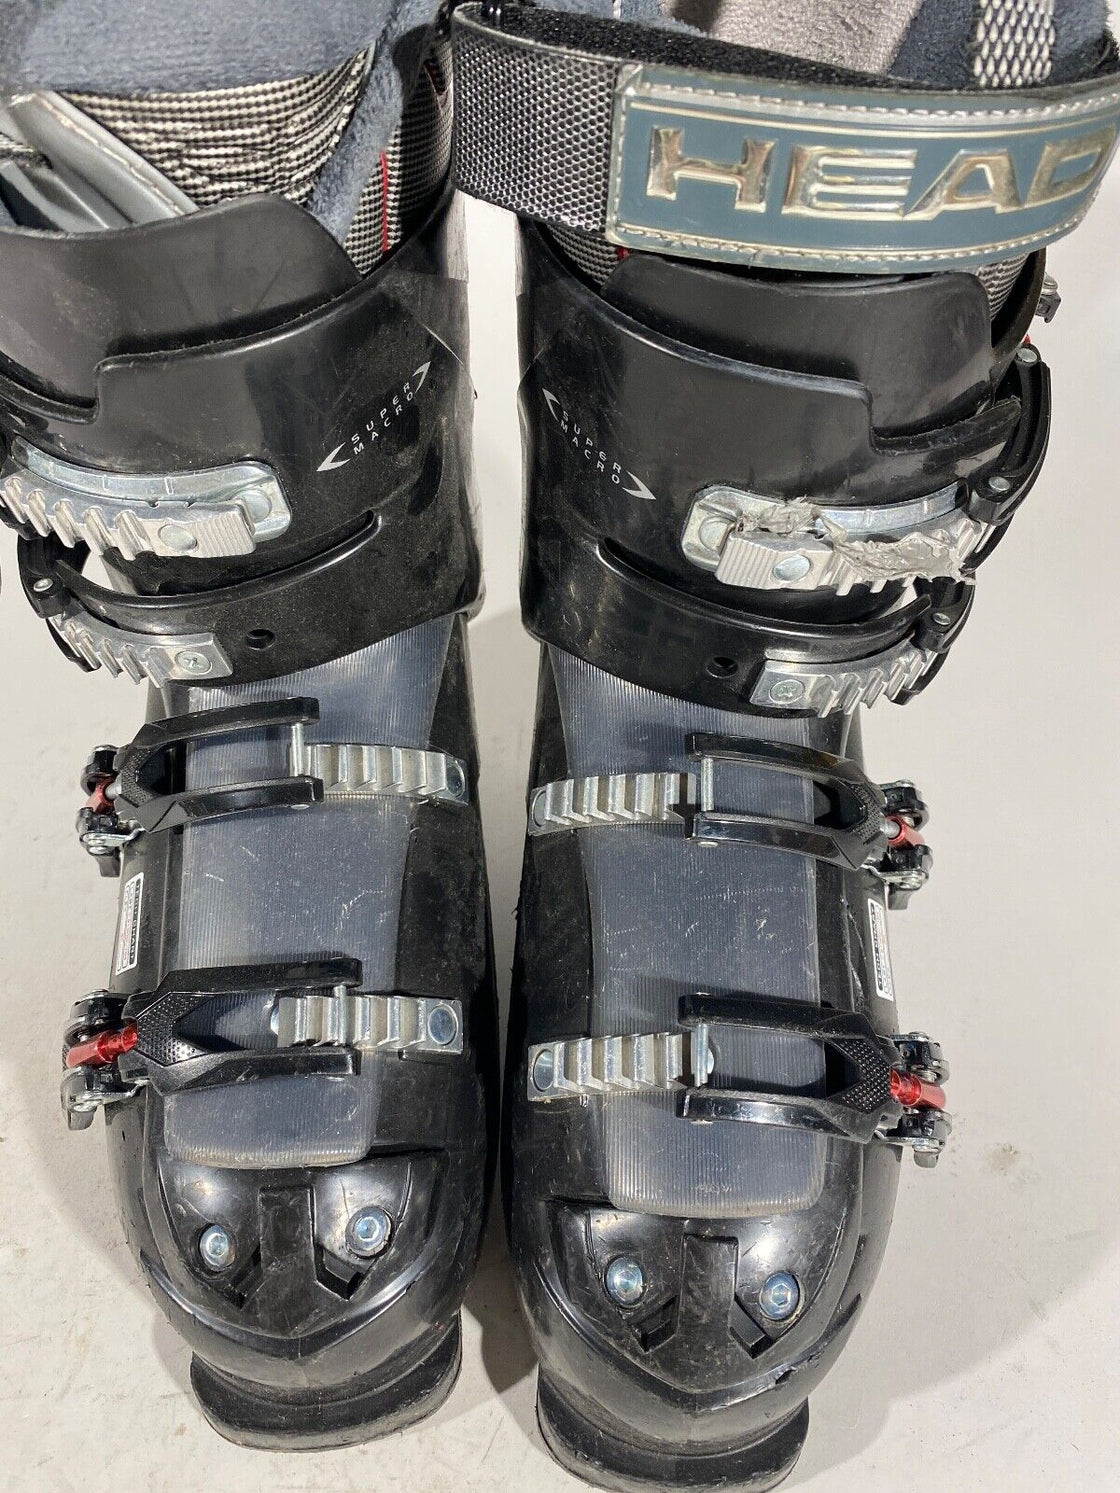 HEAD Alpine Ski Boots Downhill Size Mondo 278 mm, Outer Sole 314 mm